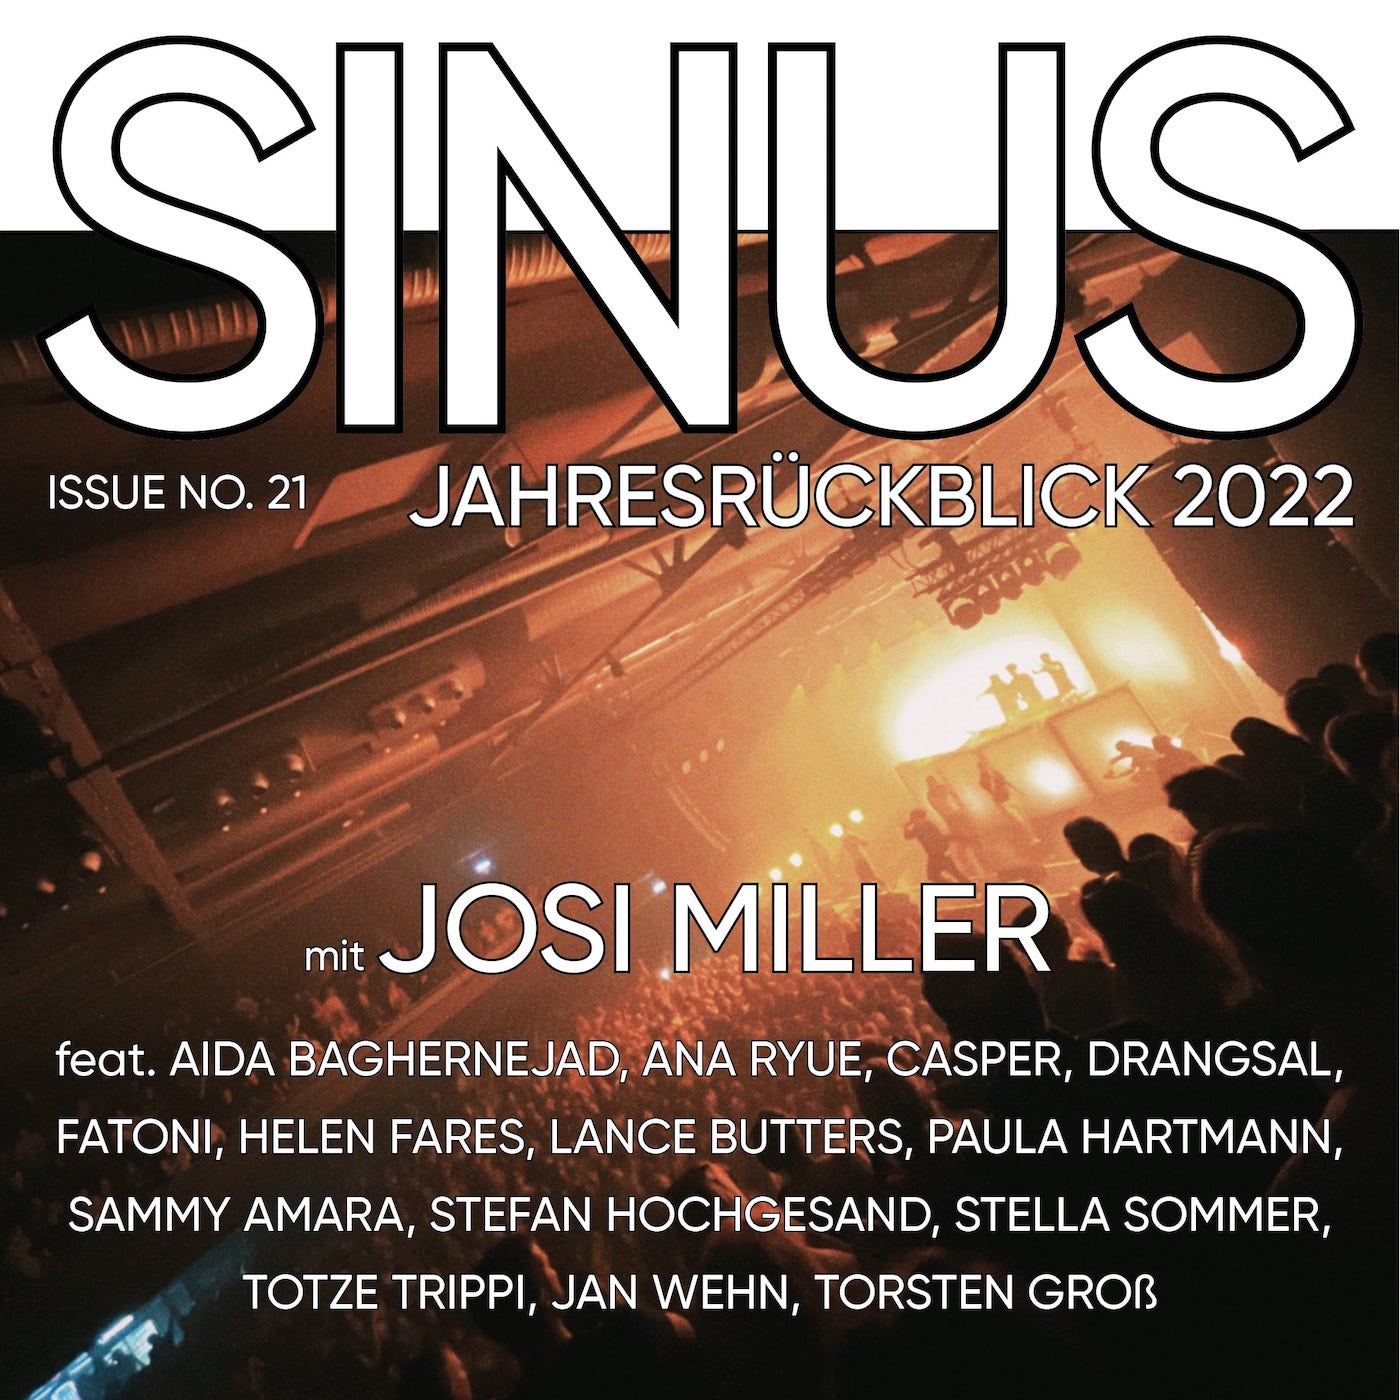 #21 Jahresrückblick 2022 feat. Josi Miller, Casper, Sammy Amara u.v.m.